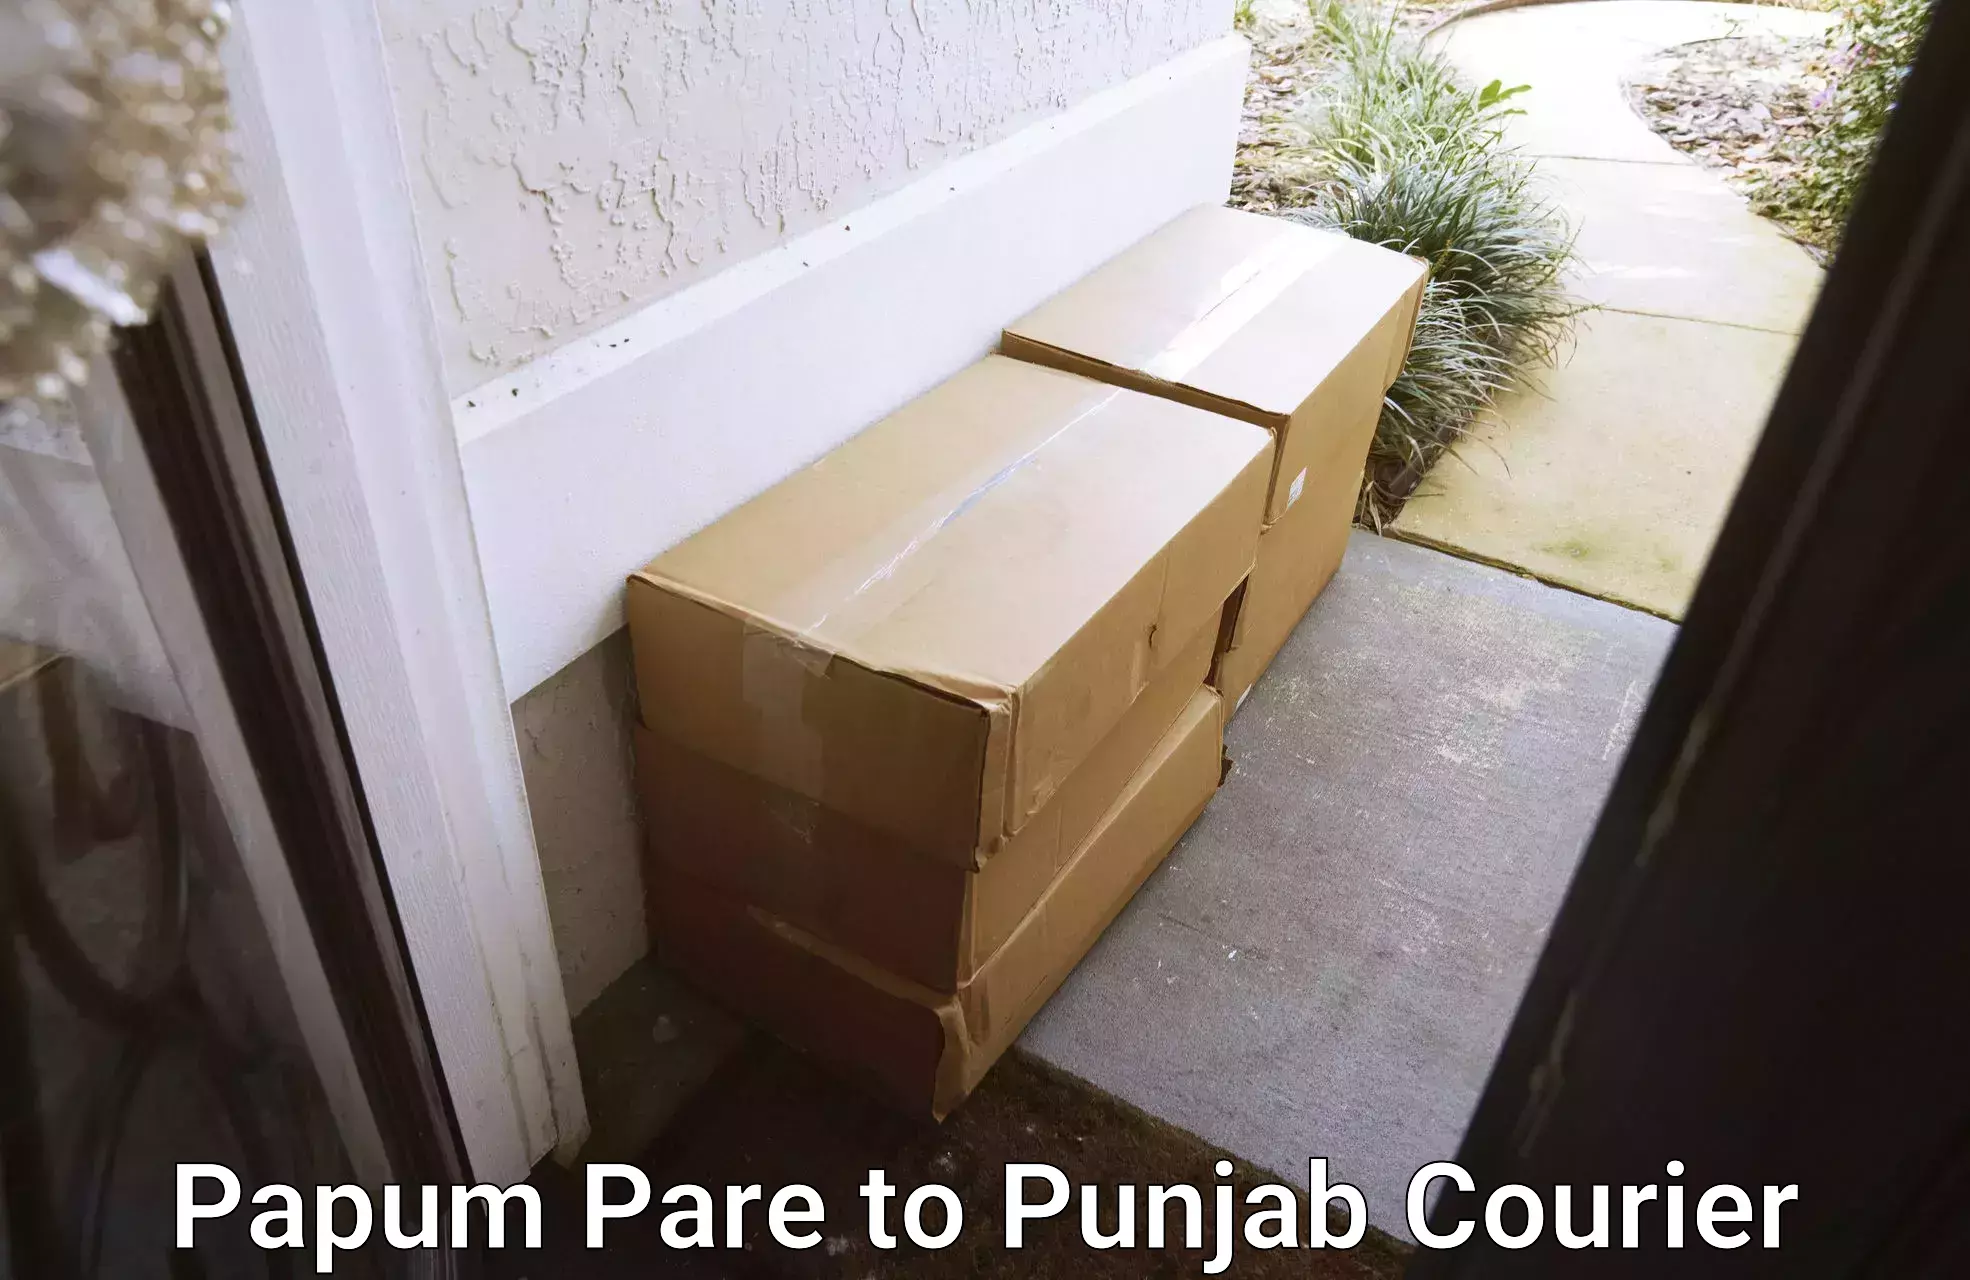 Flexible parcel services Papum Pare to Mansa